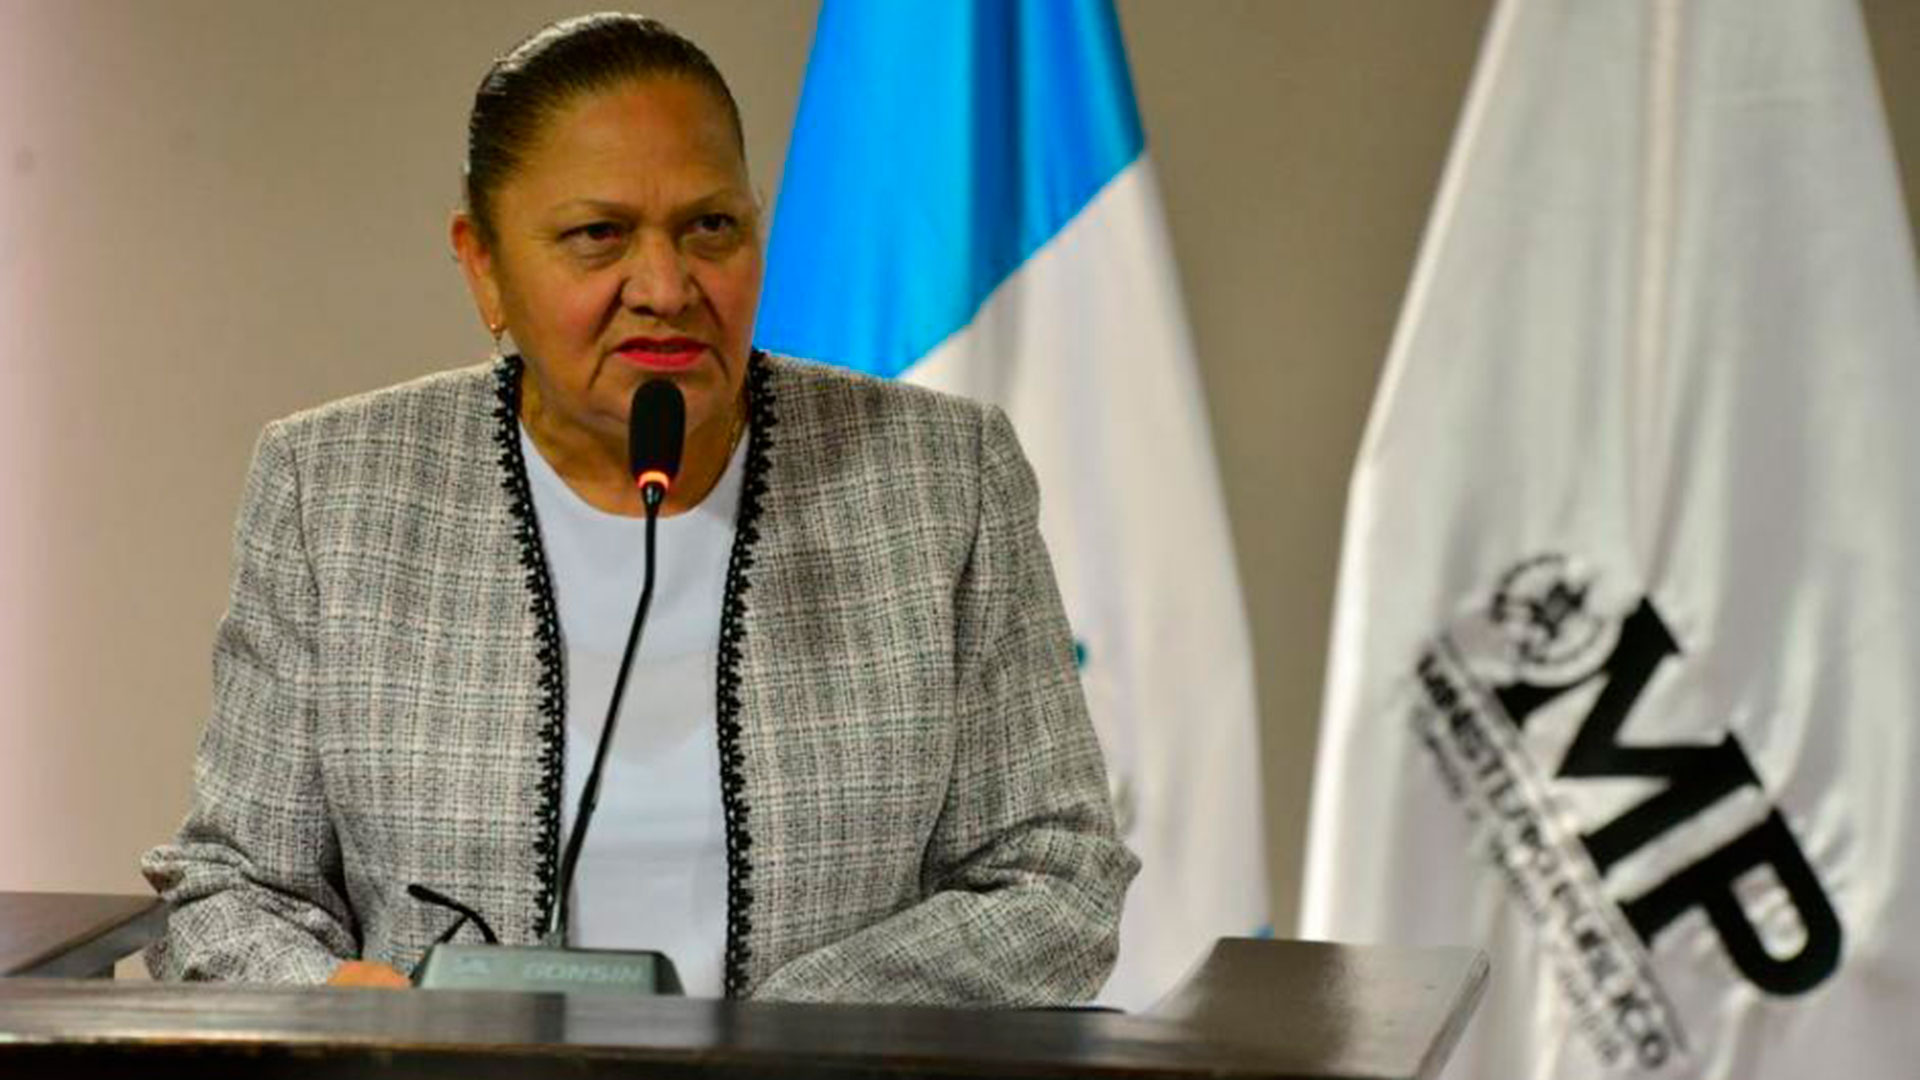 Consuelo Porras, fiscal general de Guatemala, a quien Estados Unidos ha listado como "agente corrupta" y ha negado la entrada al país.